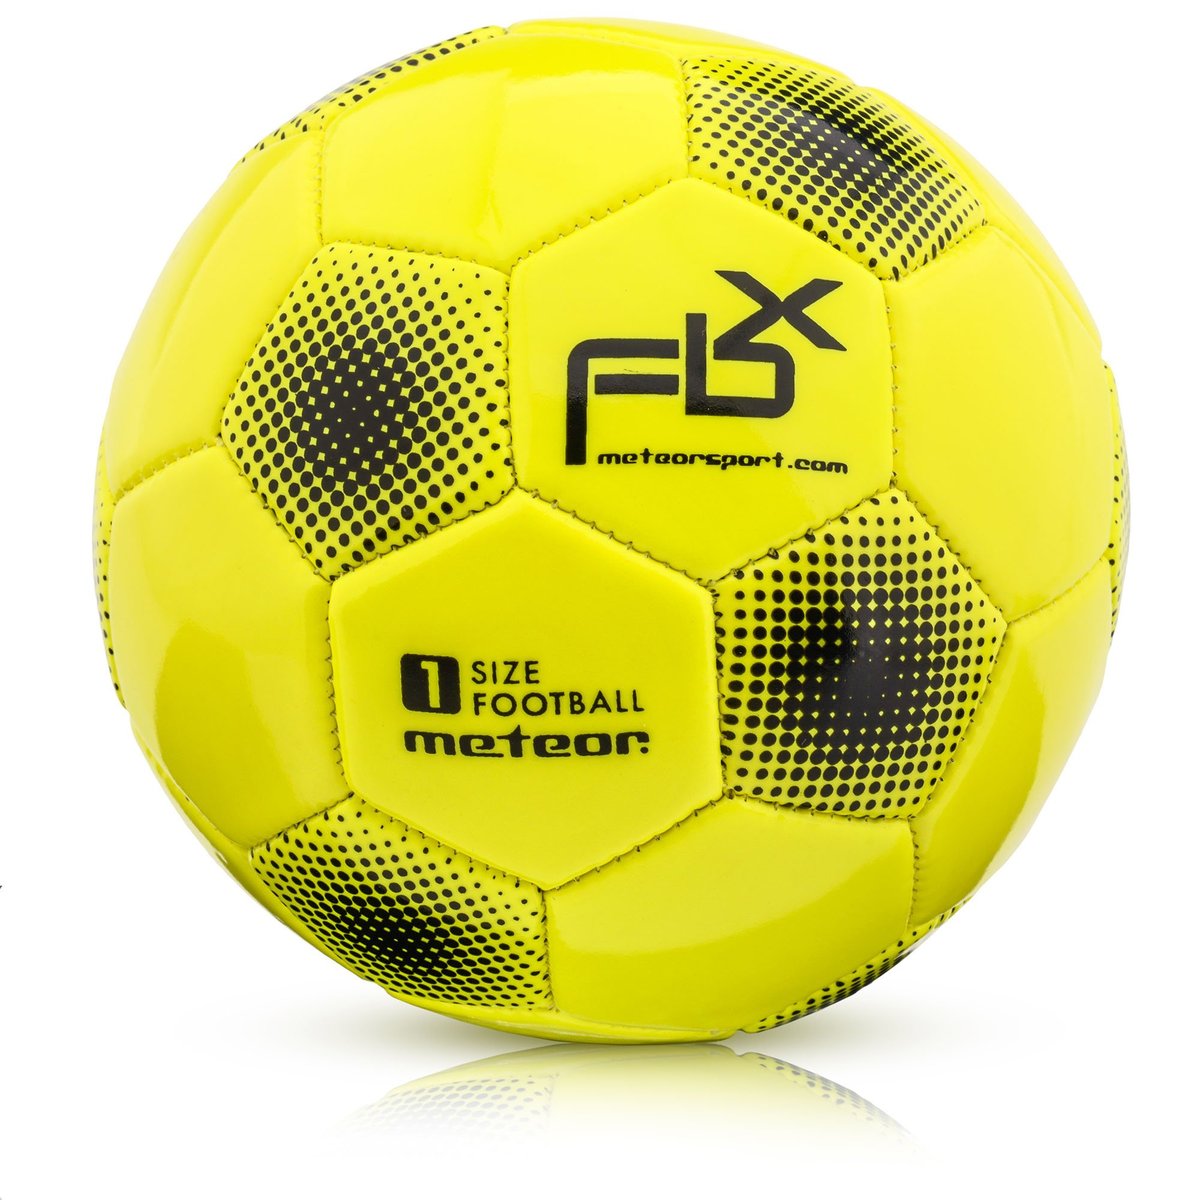 Zdjęcia - Pozostałe akcesoria Meteor Piłka Nożna  Fbx 1 Neonowy Żółty 